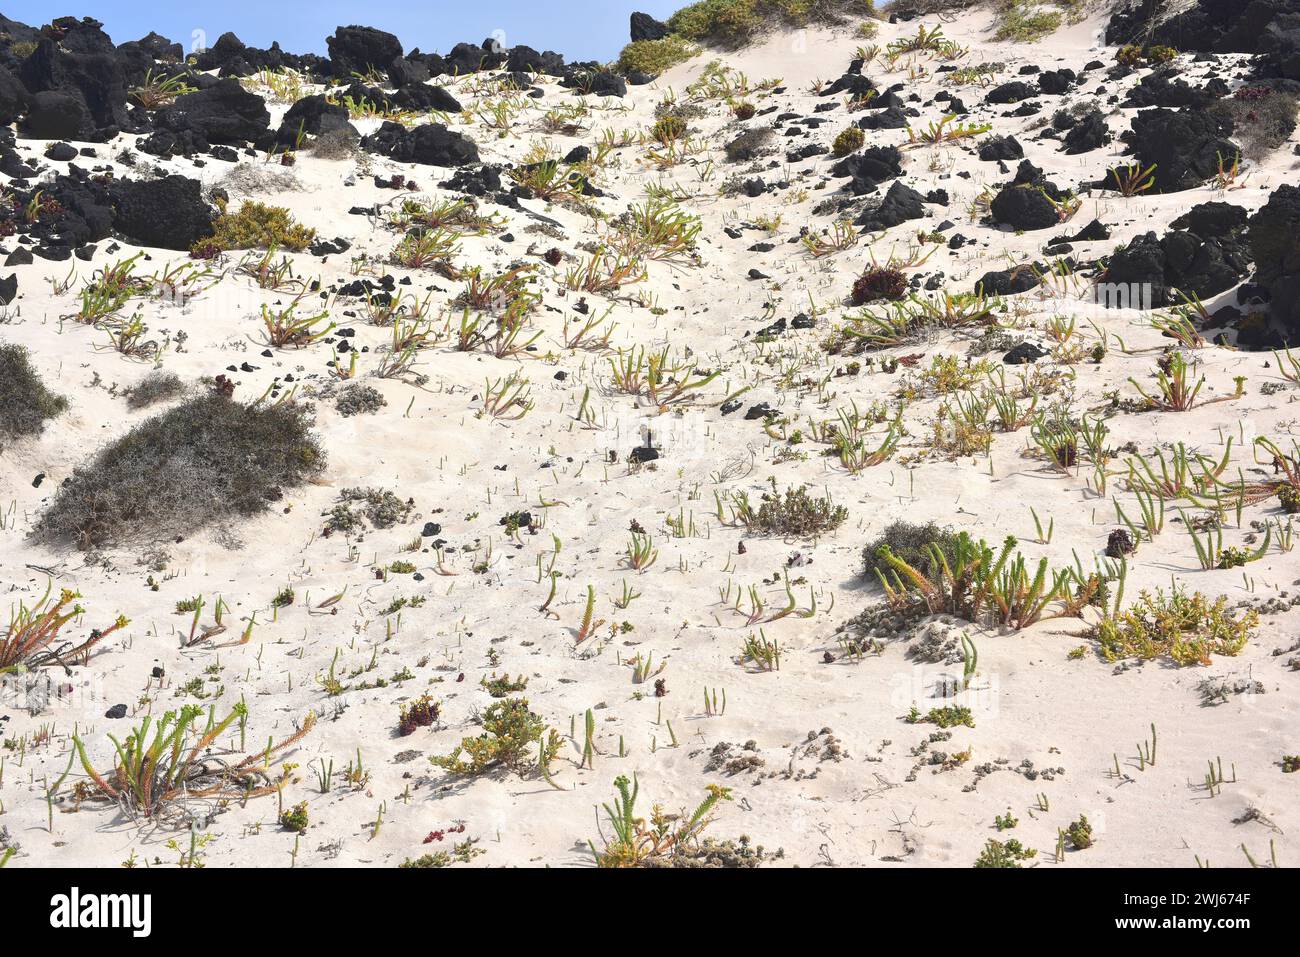 Sea spurge (Euphorbia paralias) ist ein ausdauerndes Kraut, das auf den Kanarischen Inseln, den Küsten Europas, Nordafrika und Westasien beheimatet ist. Dieses Foto wurde aufgenommen Stockfoto